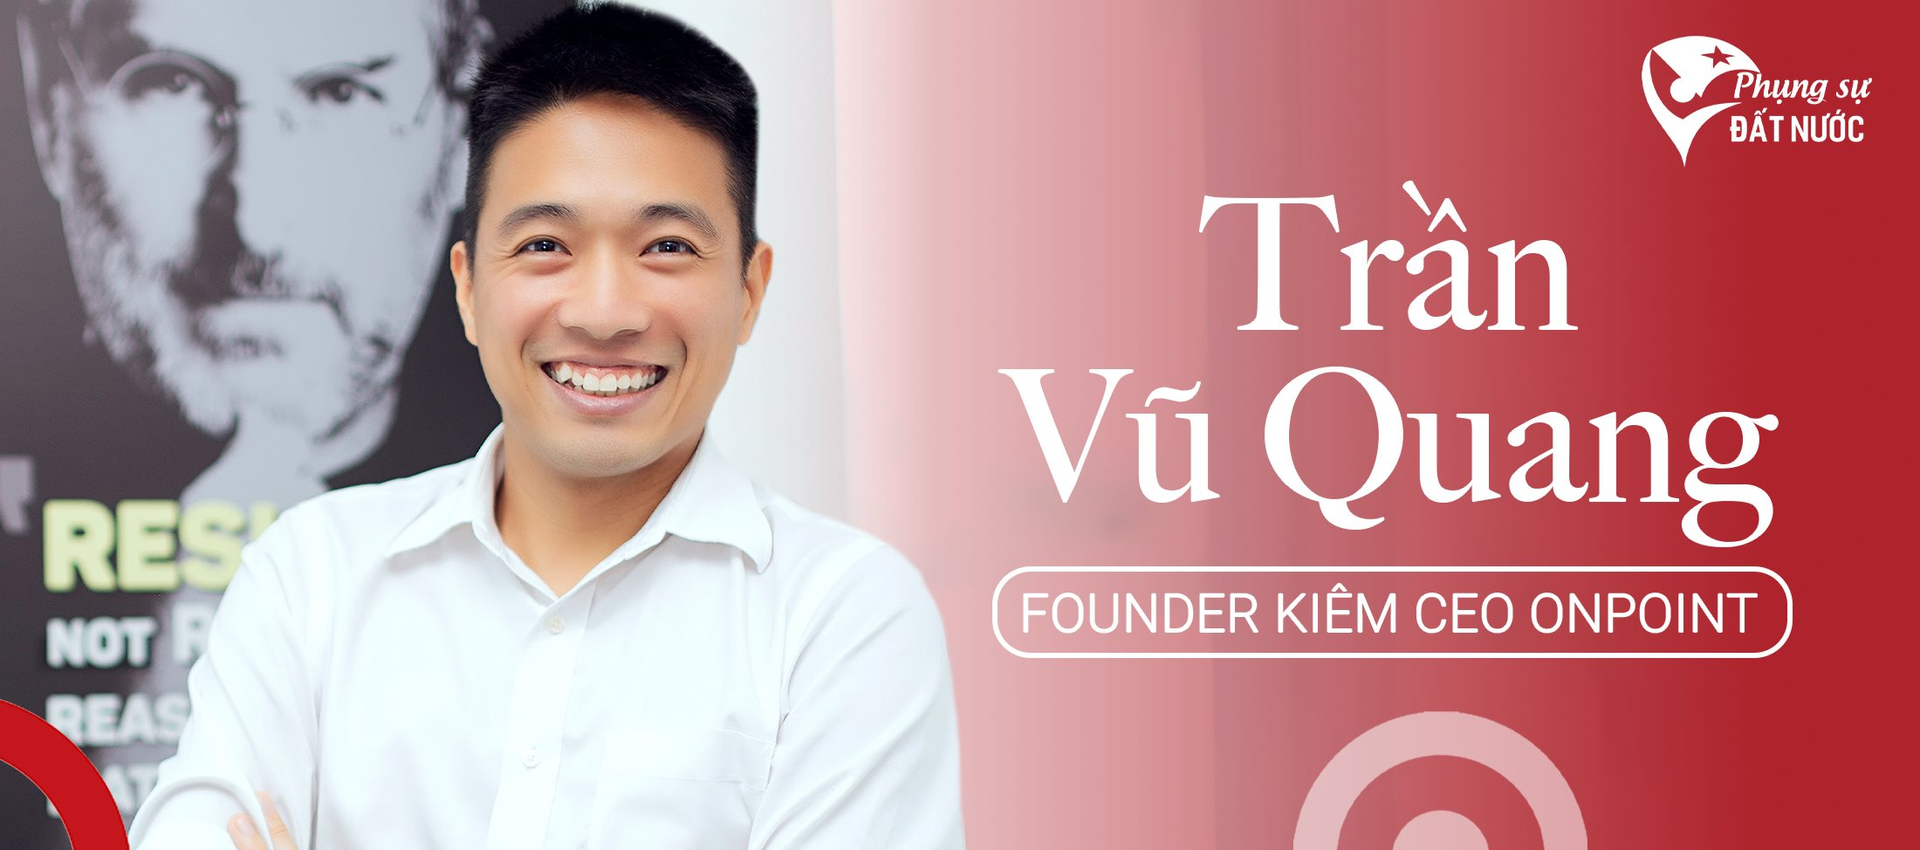 Giấc mơ phục vụ 100 triệu khách hàng Đông Nam Á của founder startup dịch vụ hỗ trợ TMĐT số 1 Việt Nam